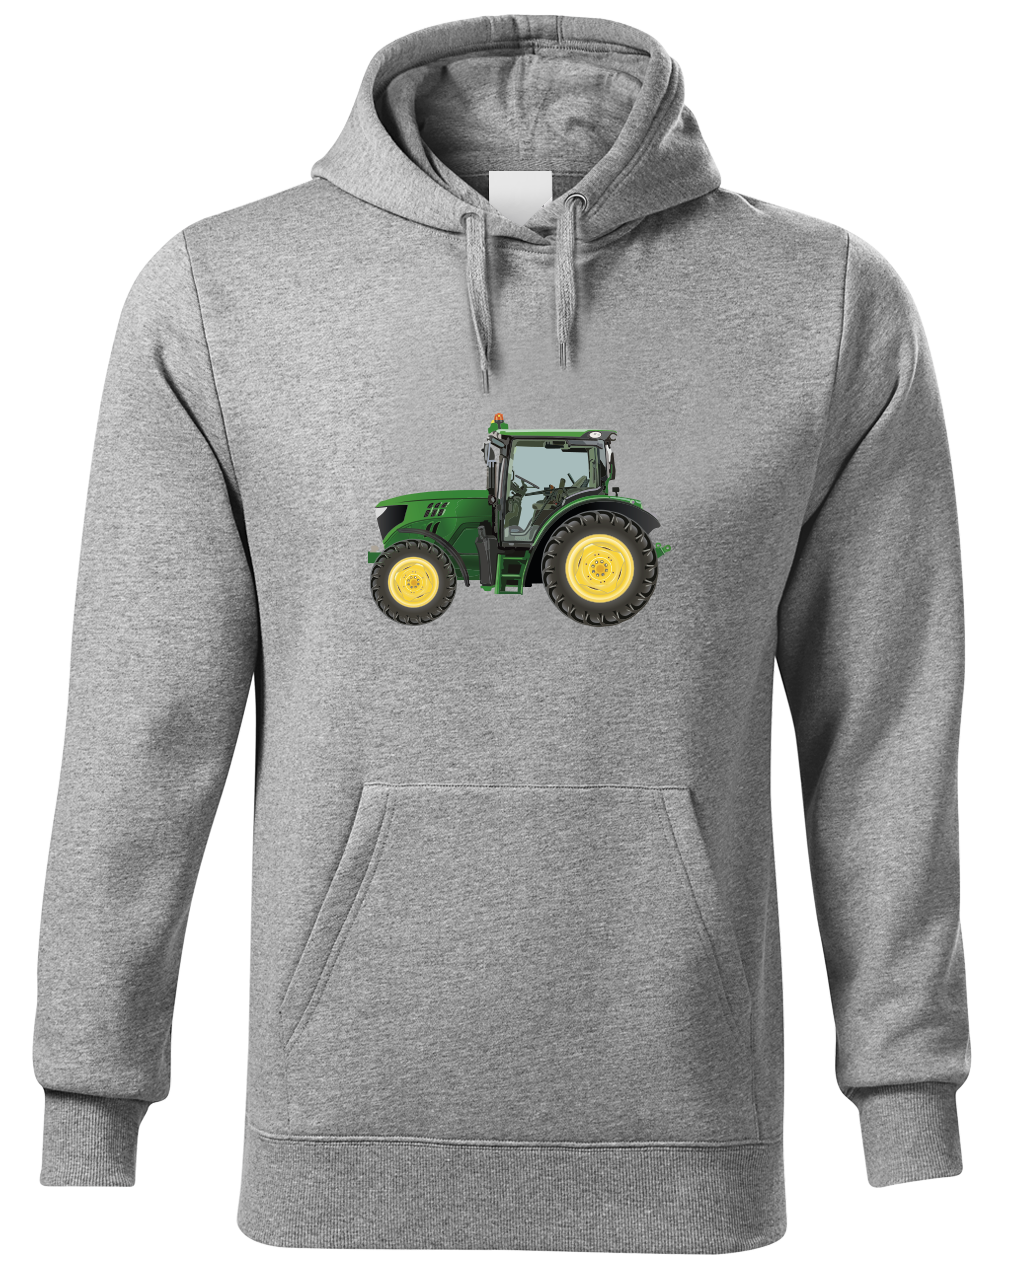 Mikina s traktorem - Zelený traktor Velikost: L, Barva: Světle šedá